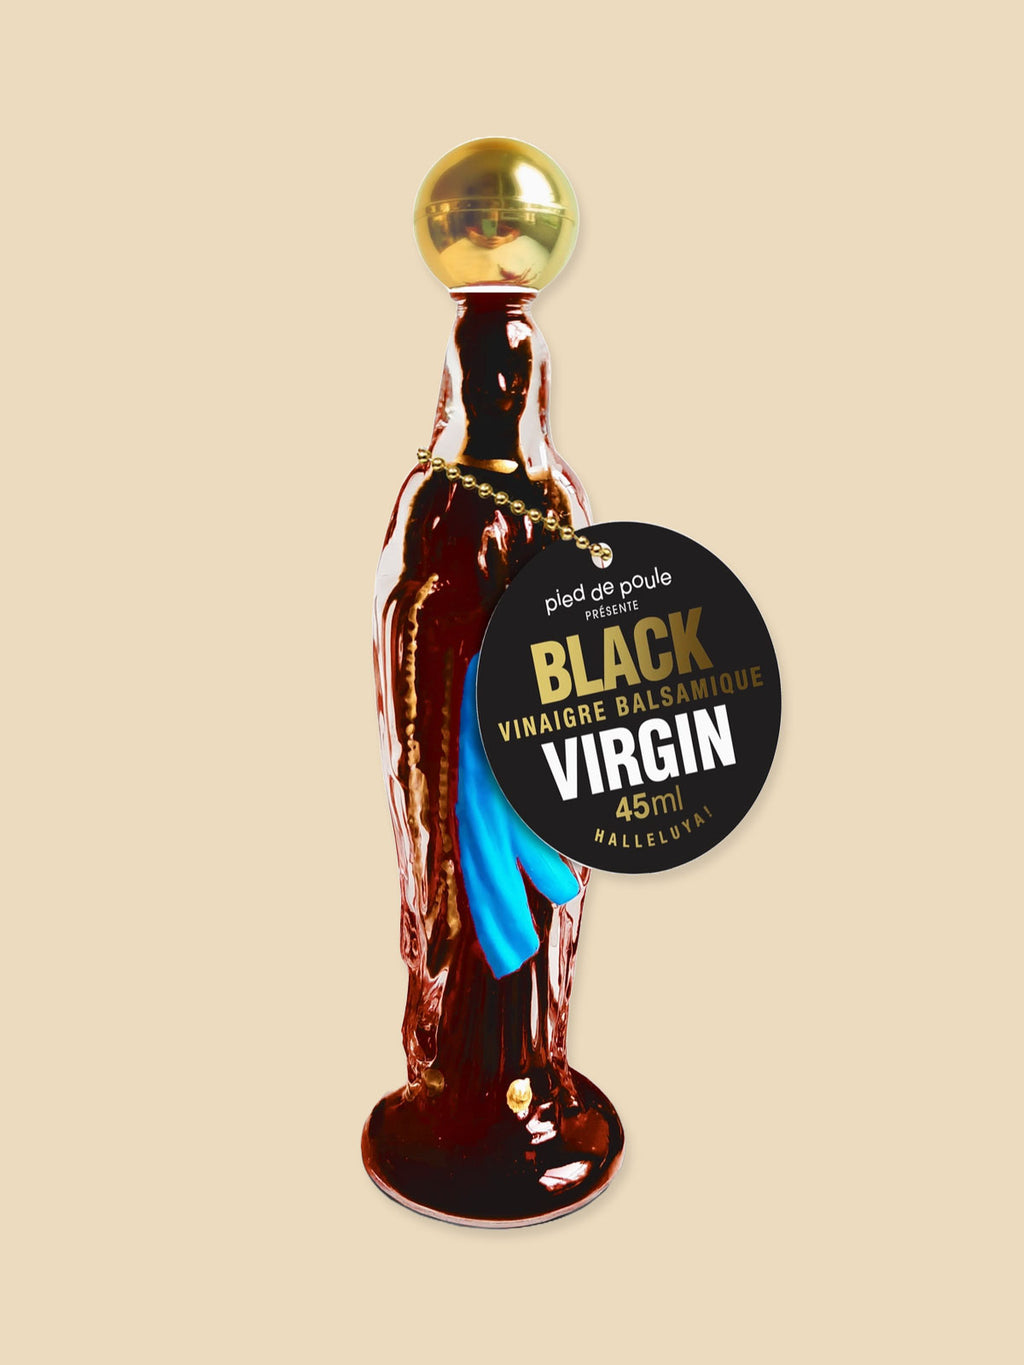 Black Virgin Balsamic Vinegar - 45ml